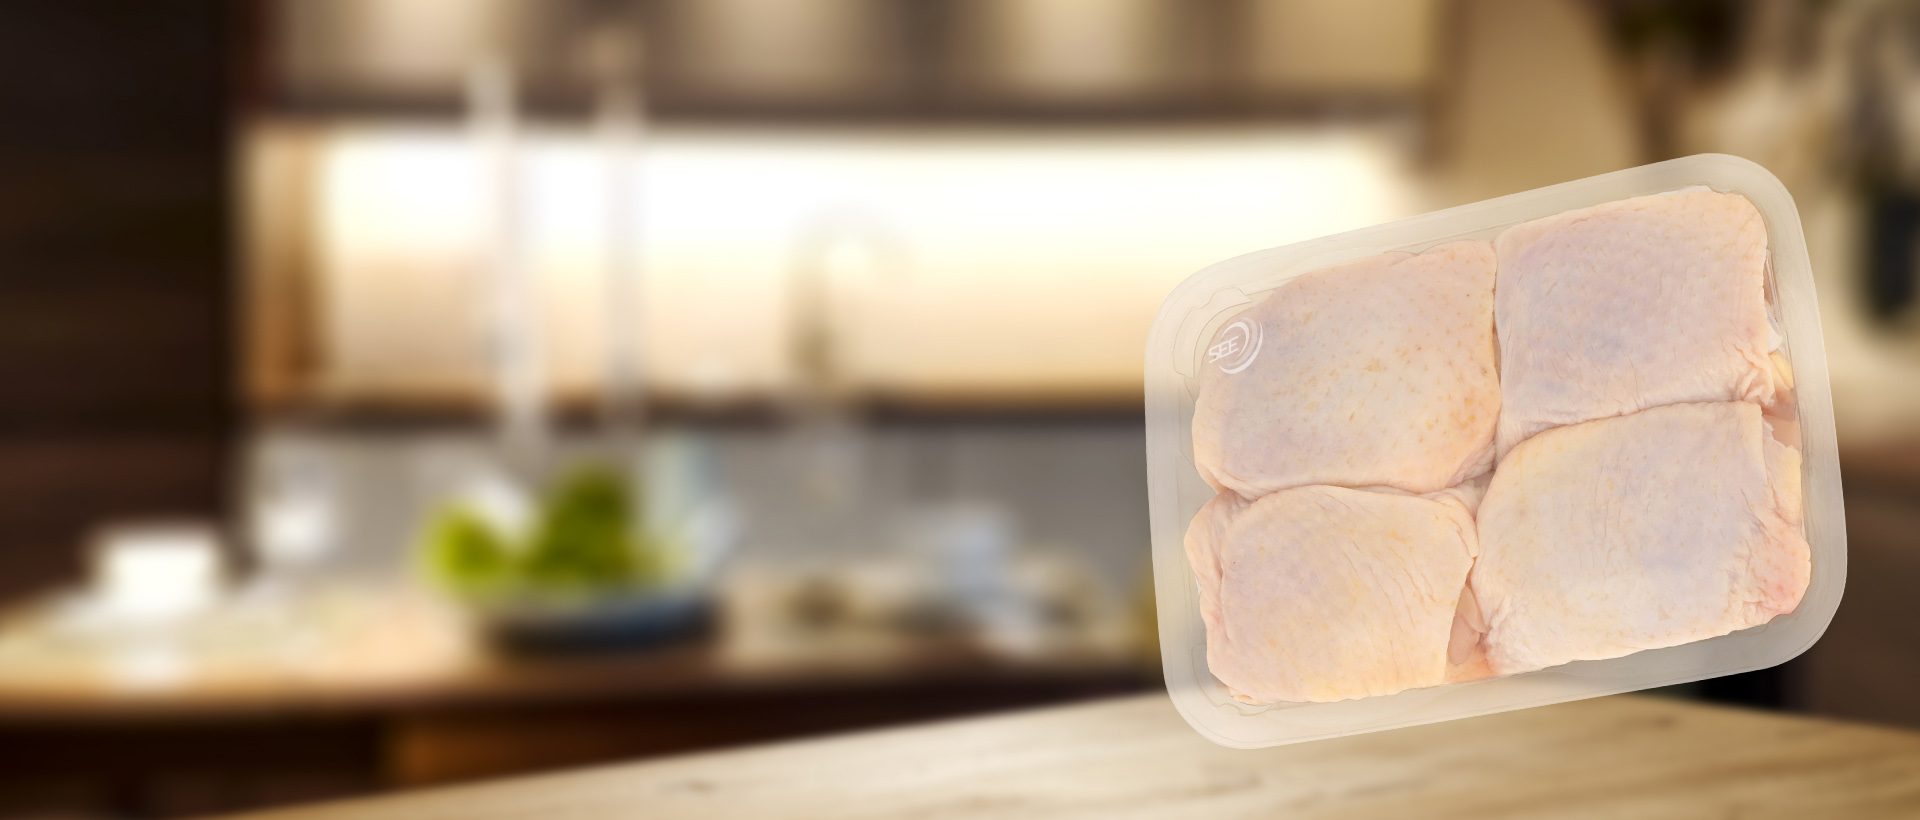 film de suremballage SES® de la marque CRYOVAC® sur des cuisses de poulet dans une barquette transparente